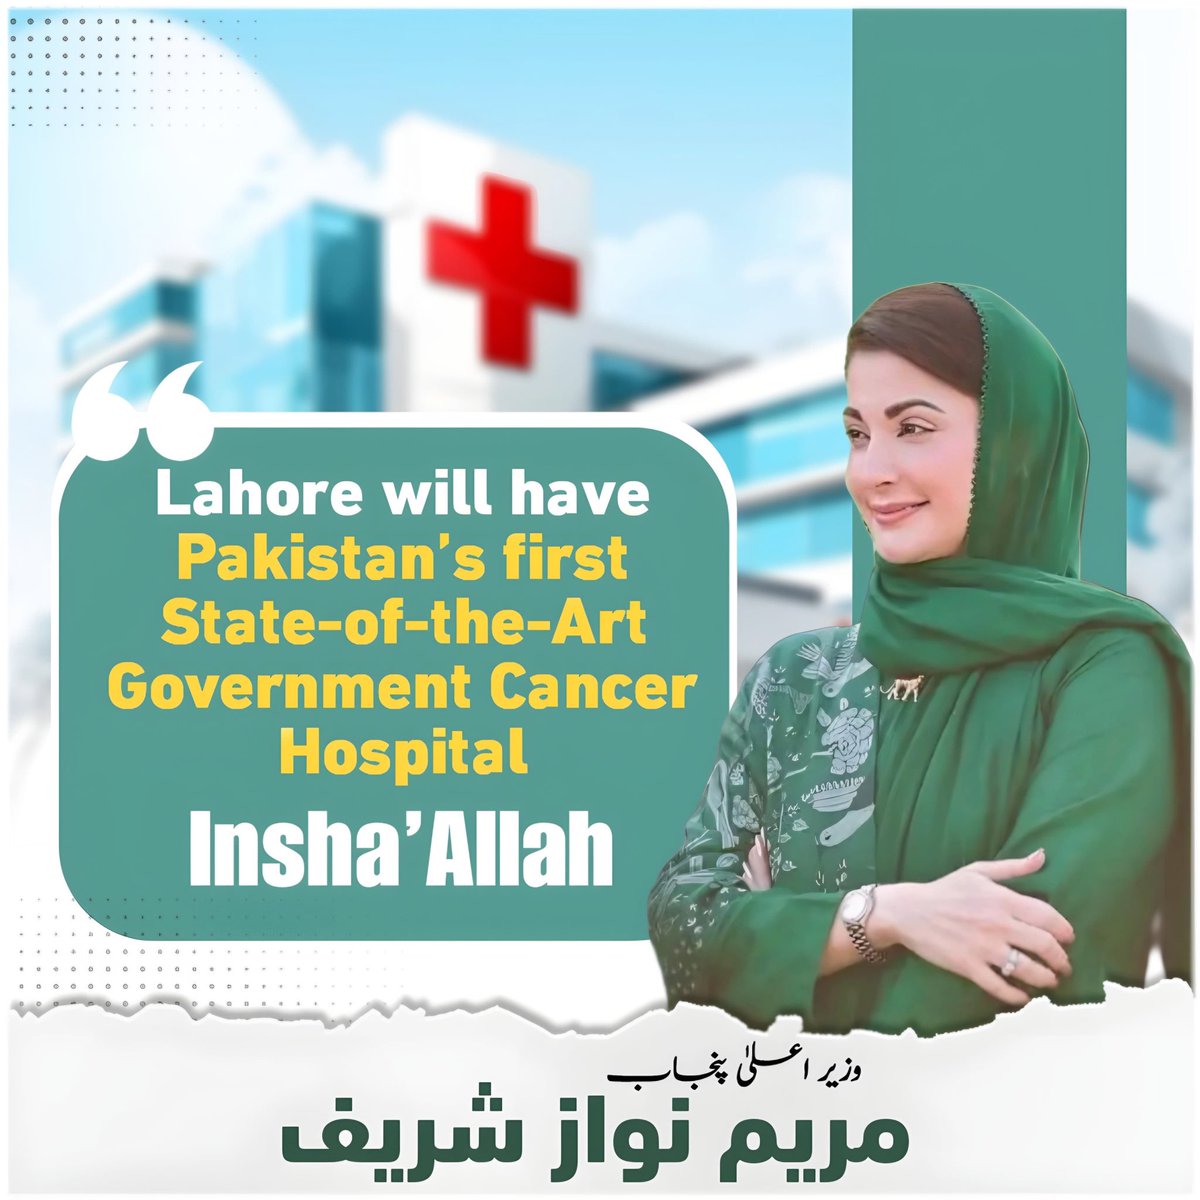 *وزیراعلیٰ پنجاب مریم نواز نے لاہور میں پہلا سرکاری کینسر ہسپتال بنانے کا اعلان کردیا، کینسر ہسپتال اسٹیٹ آف دی آرٹ ہوگا، جہاں تمام مریضوں کا بلاتفریق مفت علاج ہوگا۔